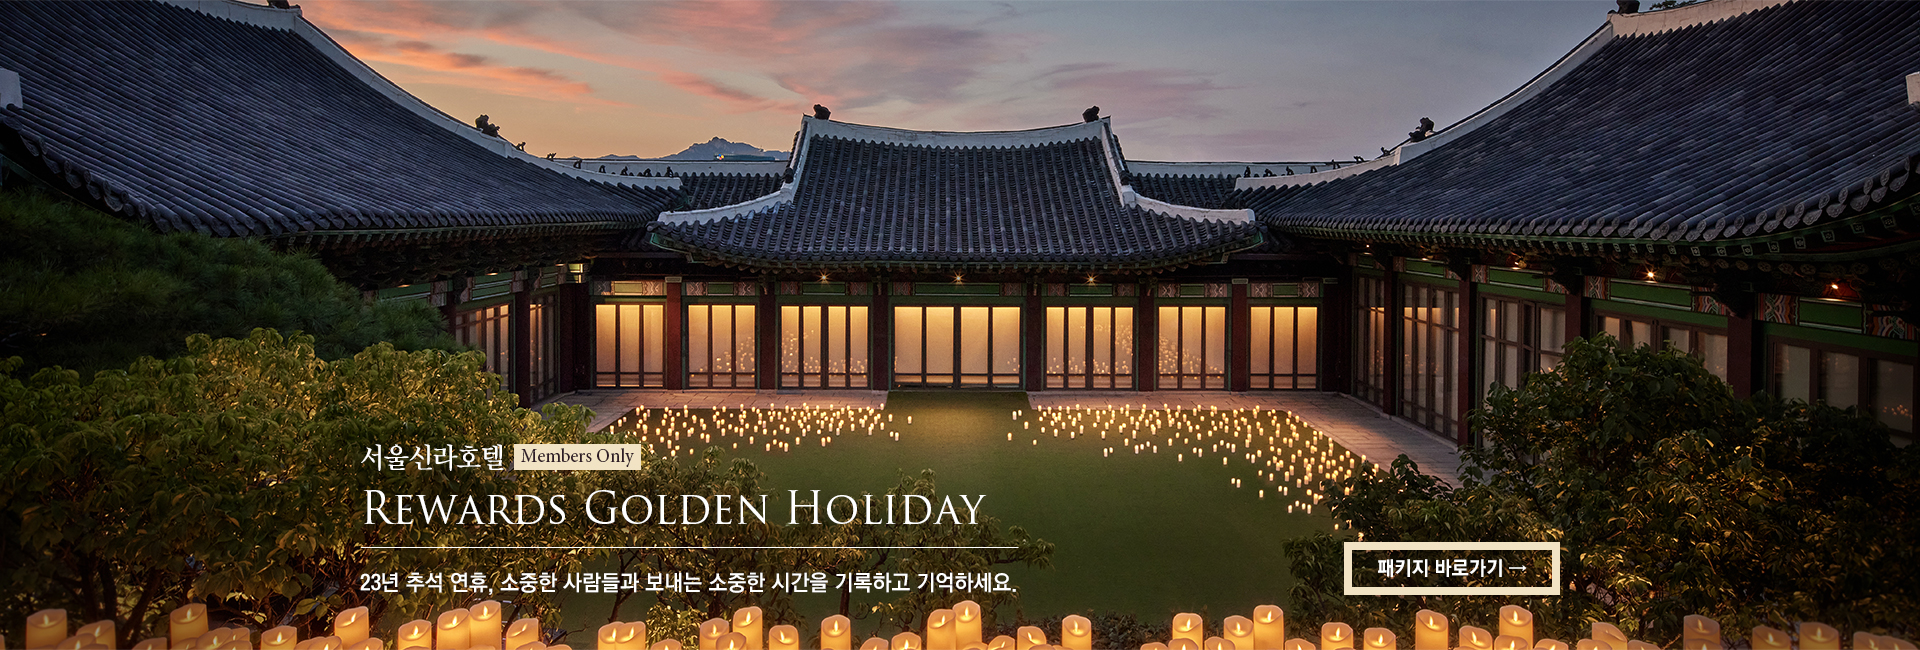 [서울신라호텔] REWARDS GOLDEN HOLIDAY 추석 연휴, 소중한 사람들과 보내는 소중한 시간을 기록하고 기억하세요.